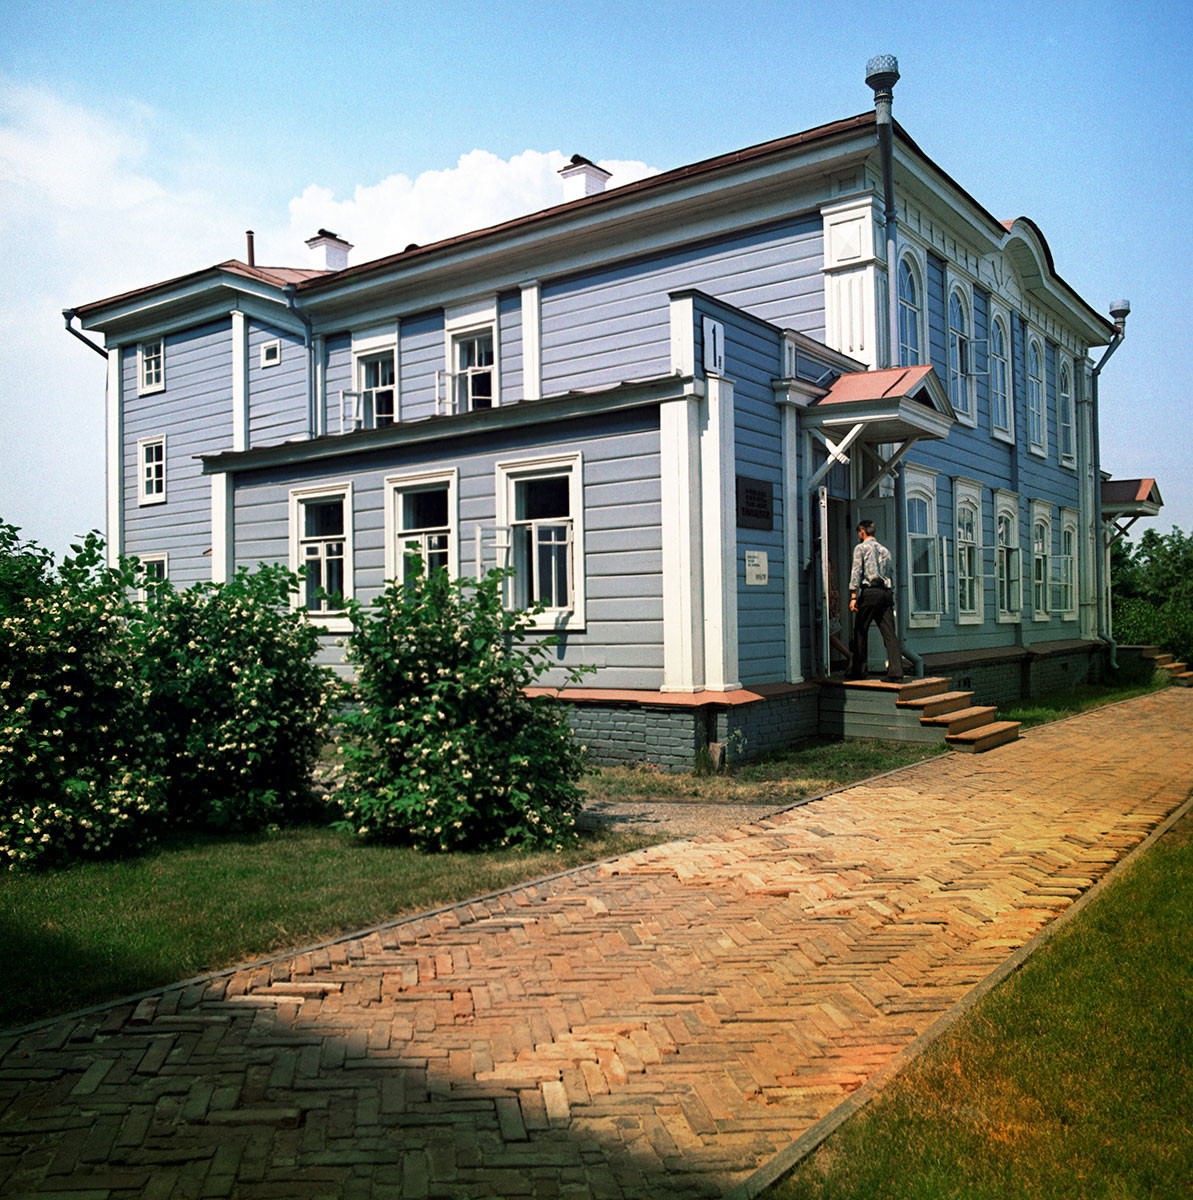 Maison-musée de la famille Oulianov à Oulianovsk. Photo de 1973